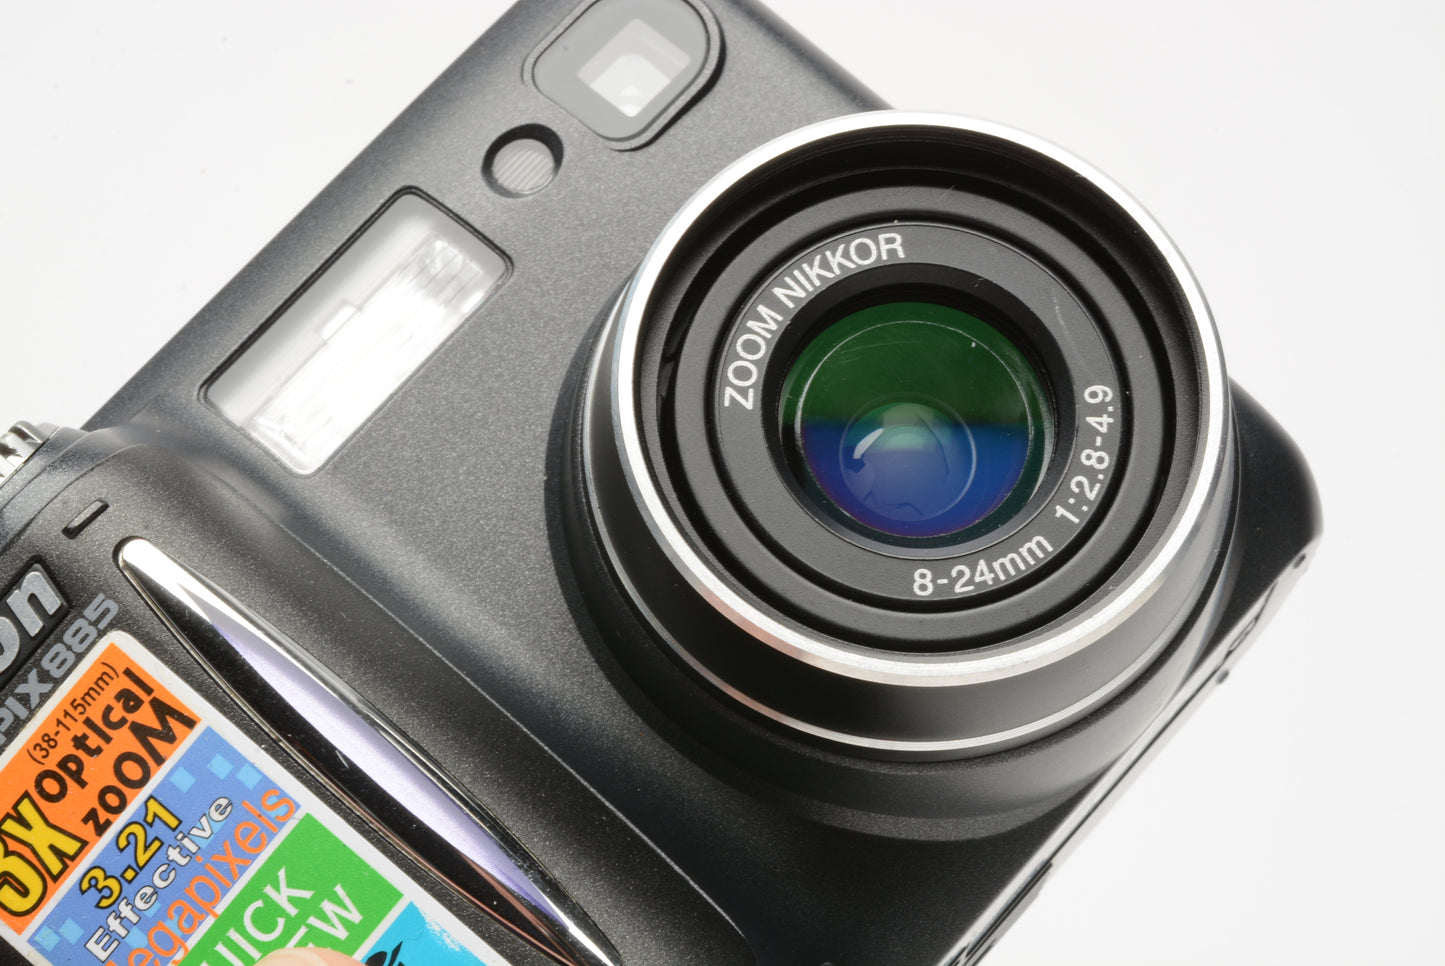 Nikon Coolpix 885 Digital Point&Shoot camera 3.2MP boxed